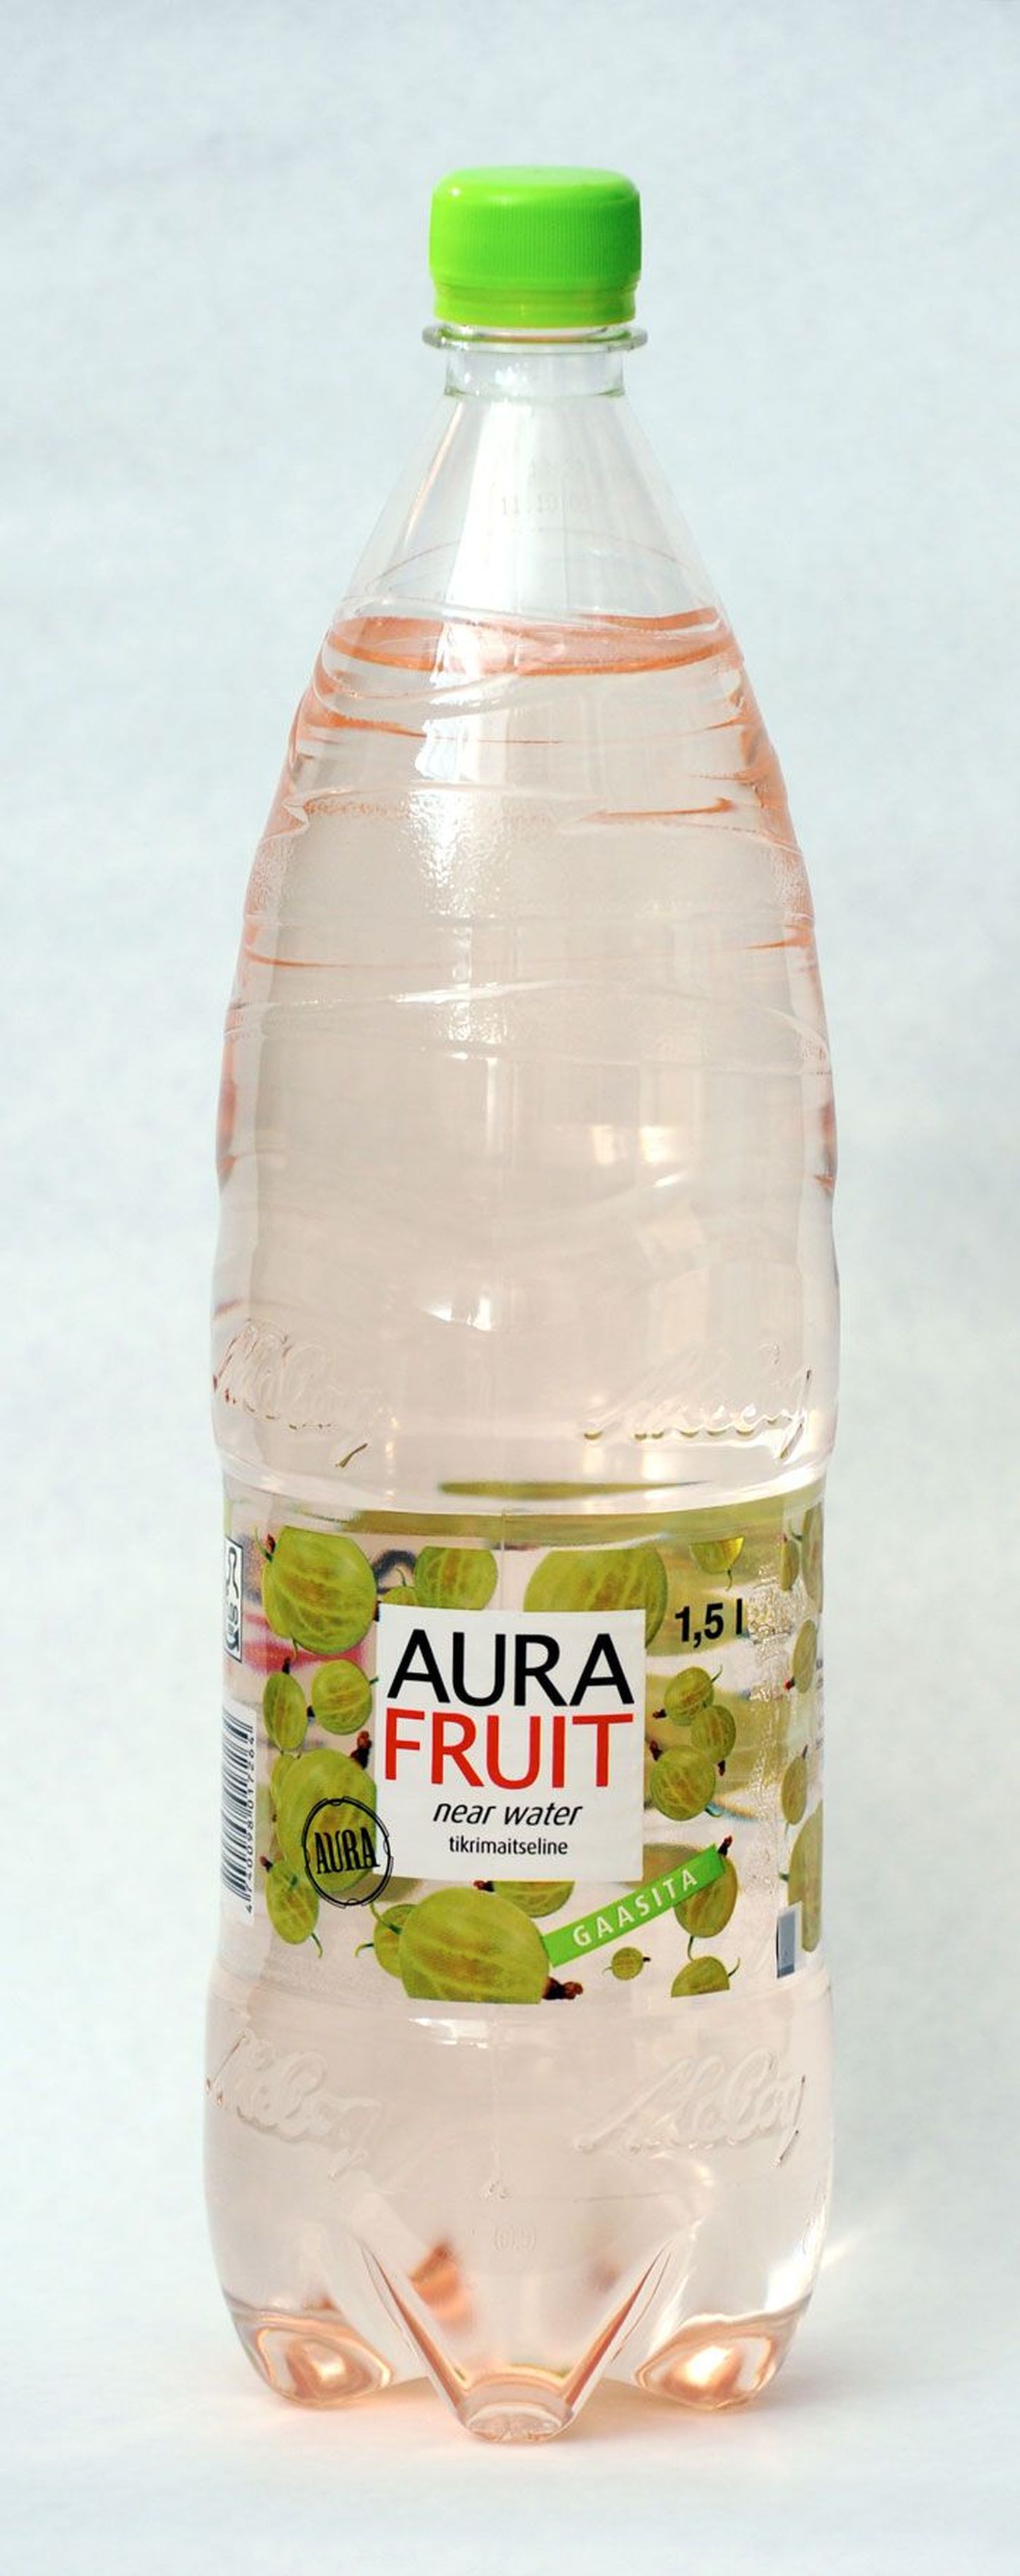 tikrimaitseline Aura Fruit near water